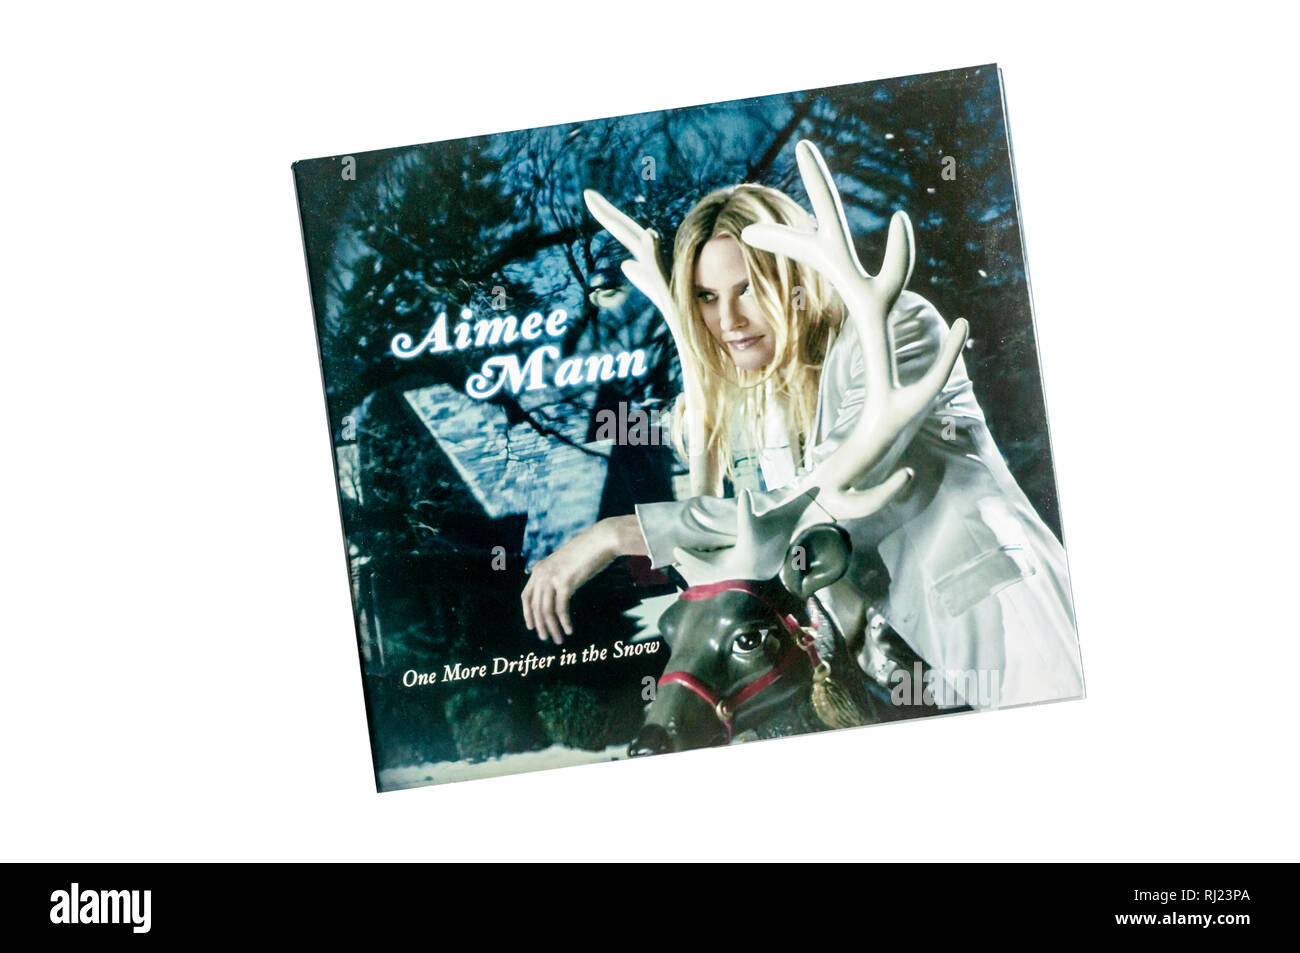 Plus d'un vagabond dans la neige était le sixième album de Aimee Mann et son premier album de Noël. Publié en 2006. Banque D'Images